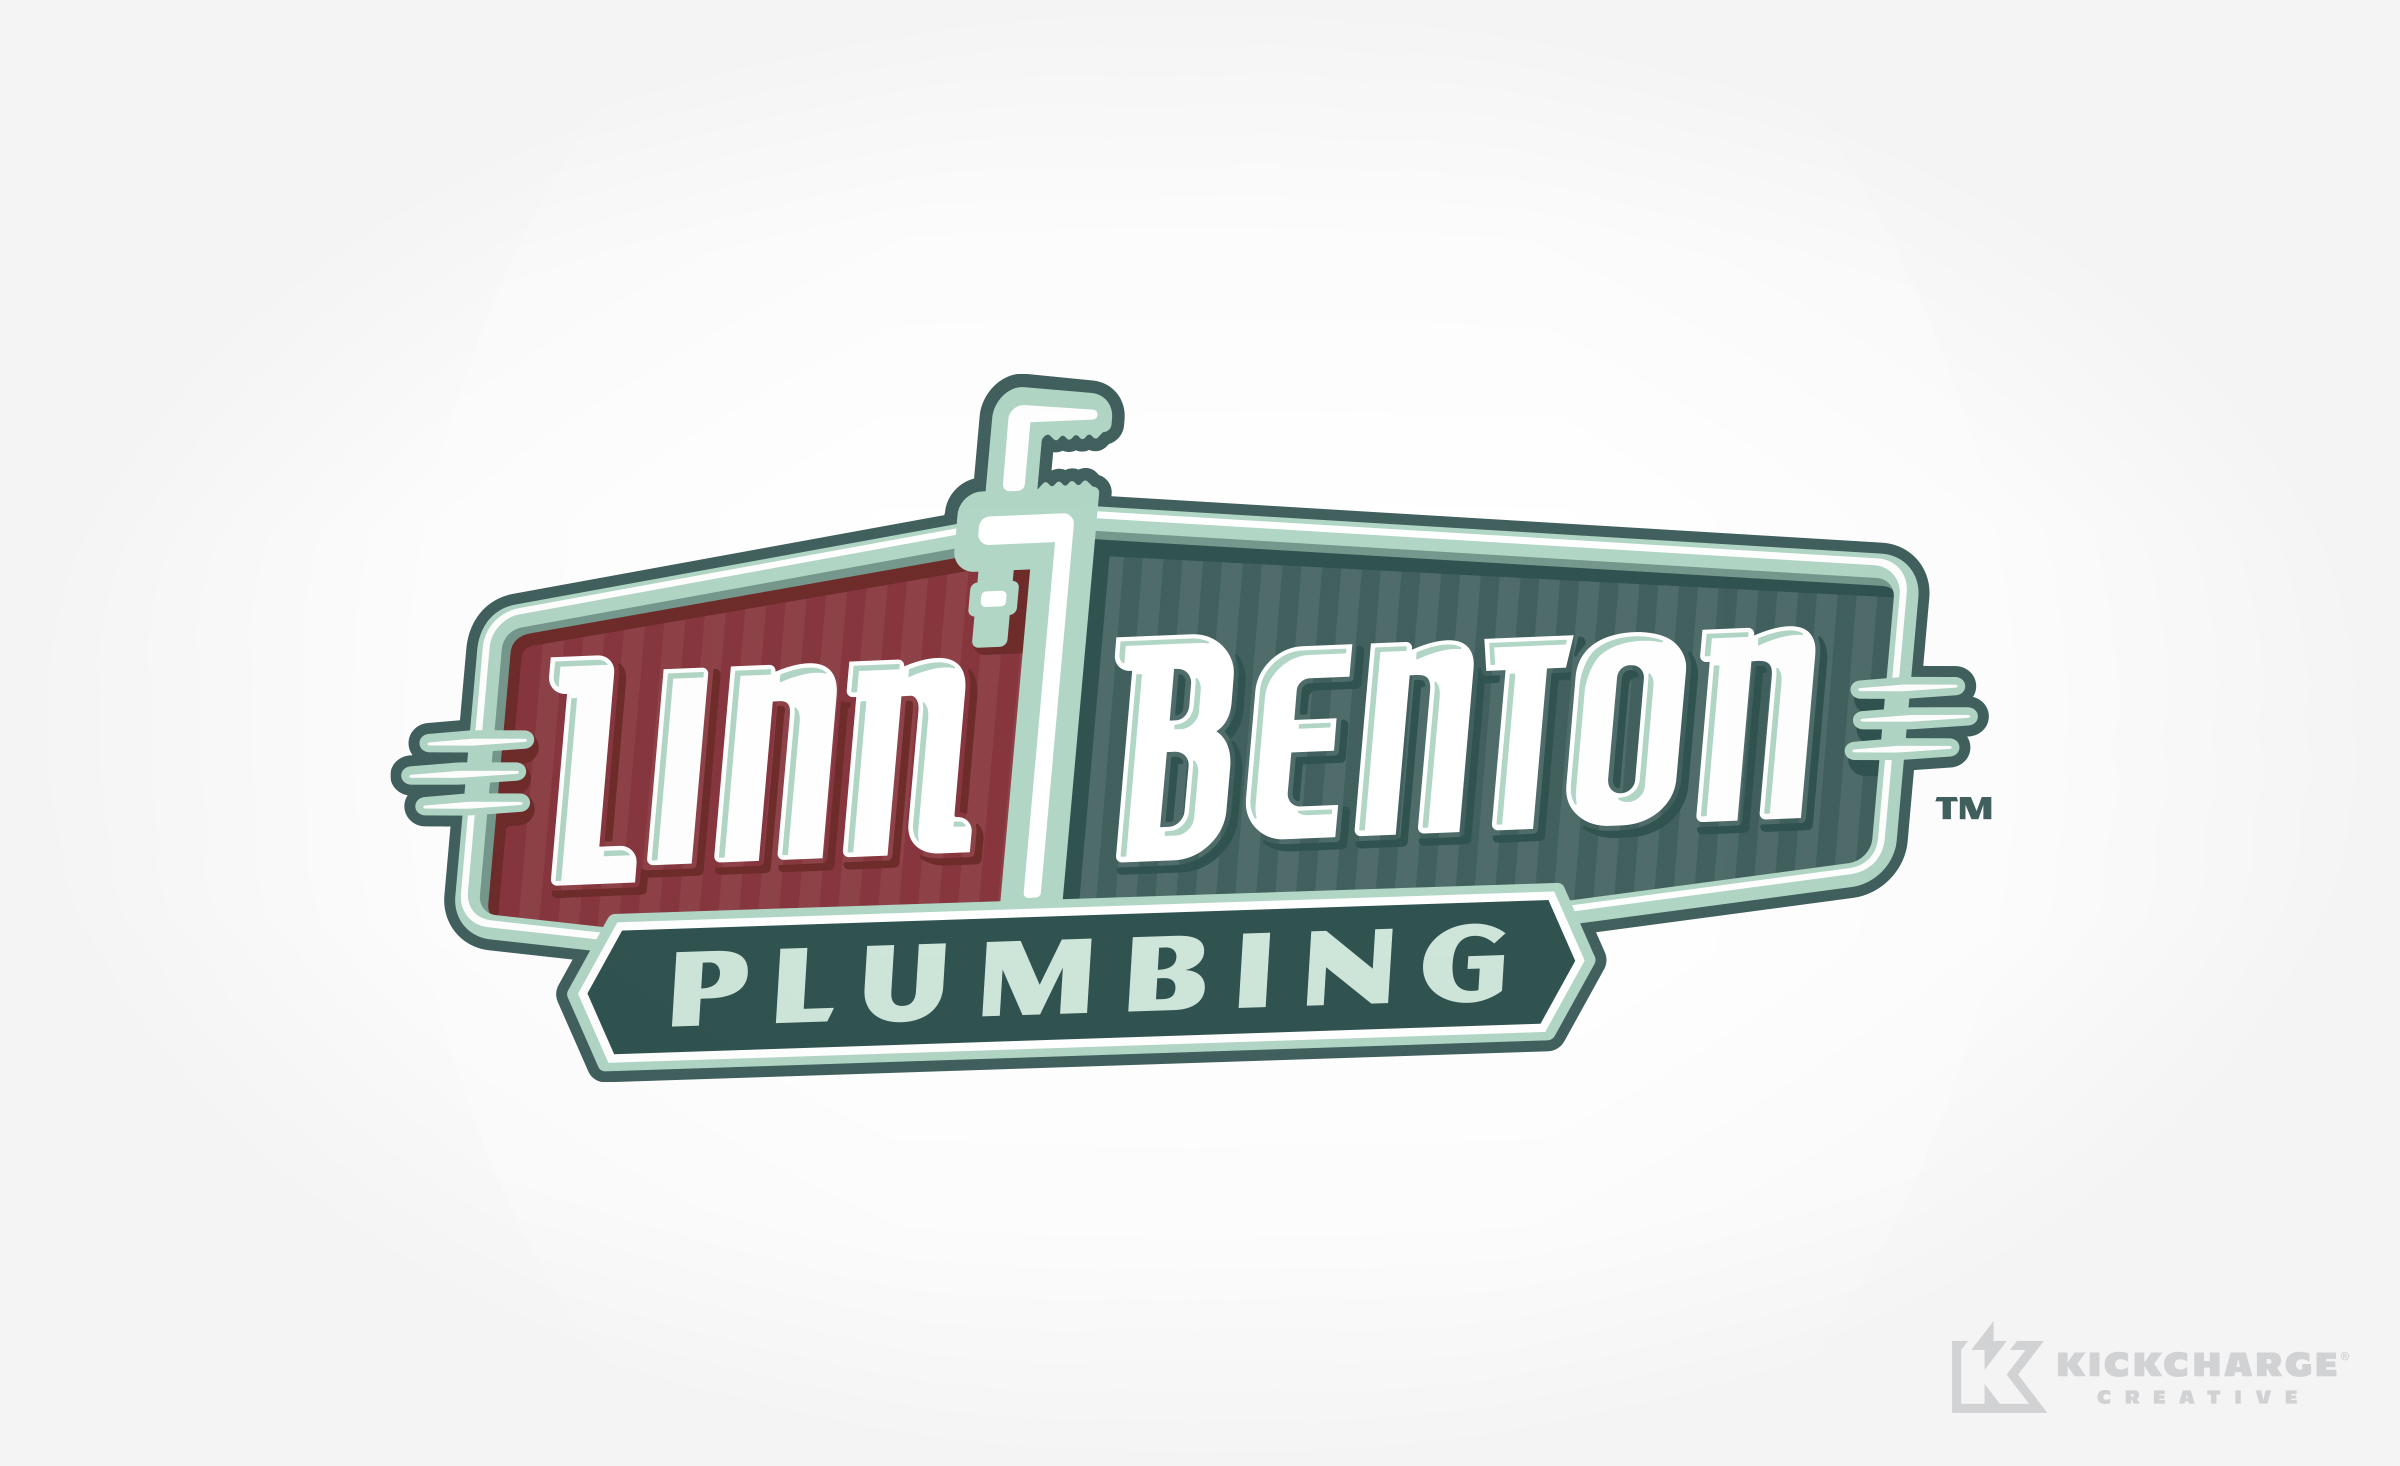 plumbing logo for Linn Benton Plumbing